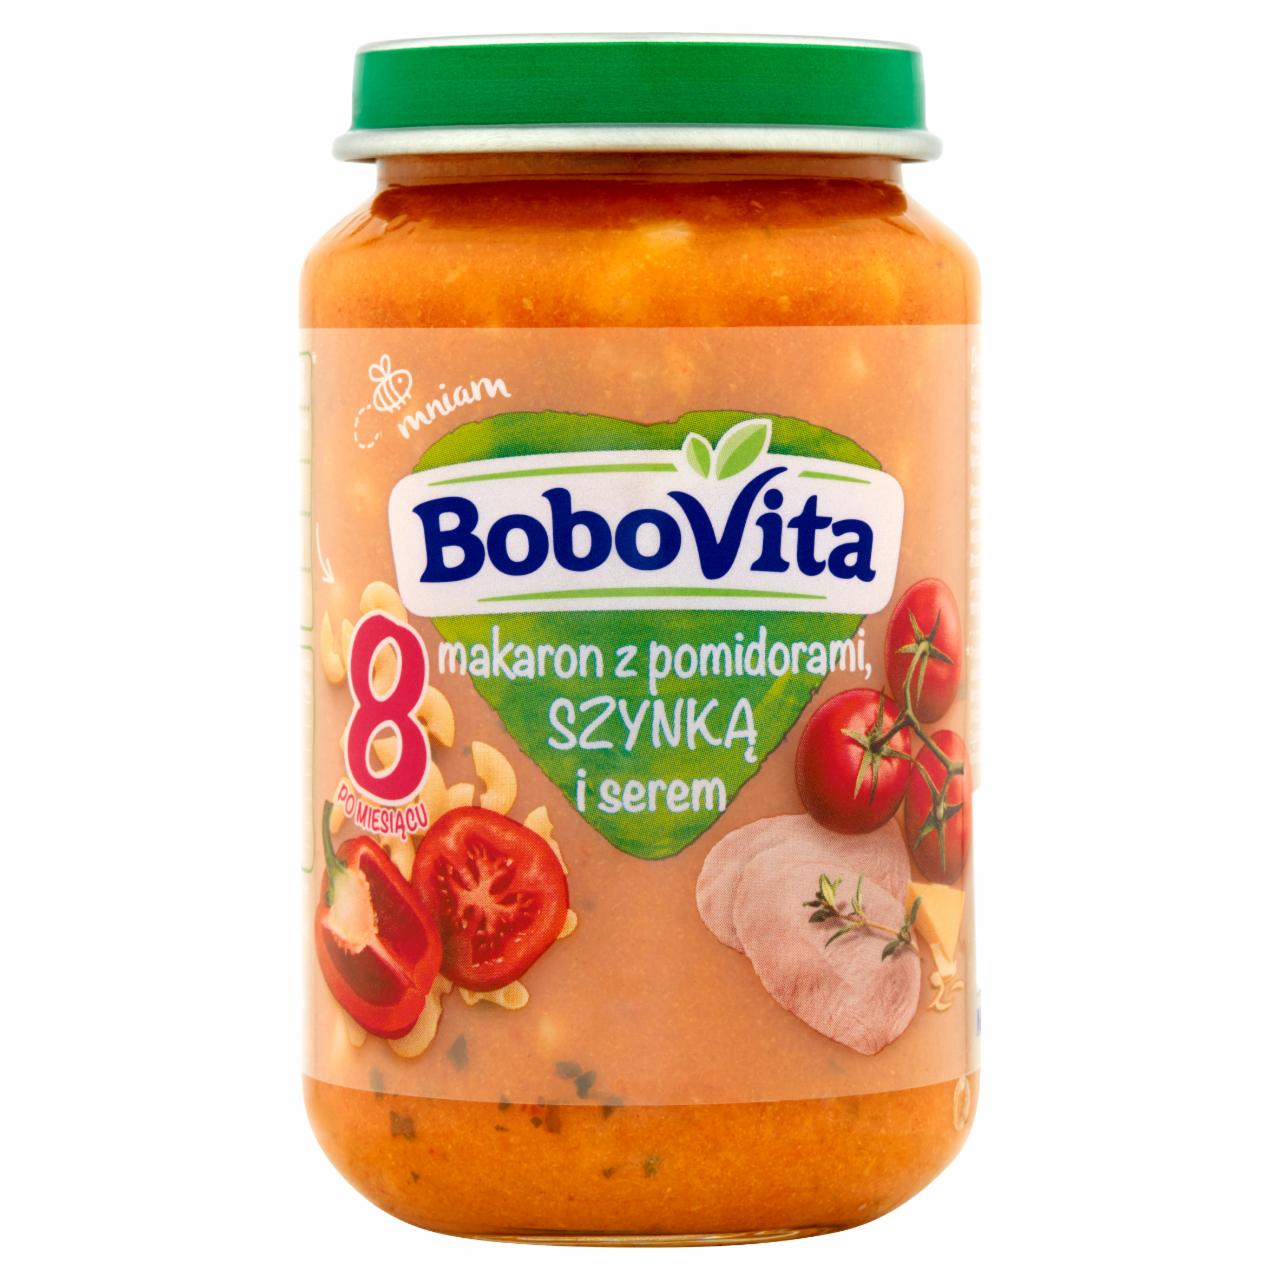 Zdjęcia - BoboVita Makaron z pomidorami szynką i serem po 8 miesiącu 190 g